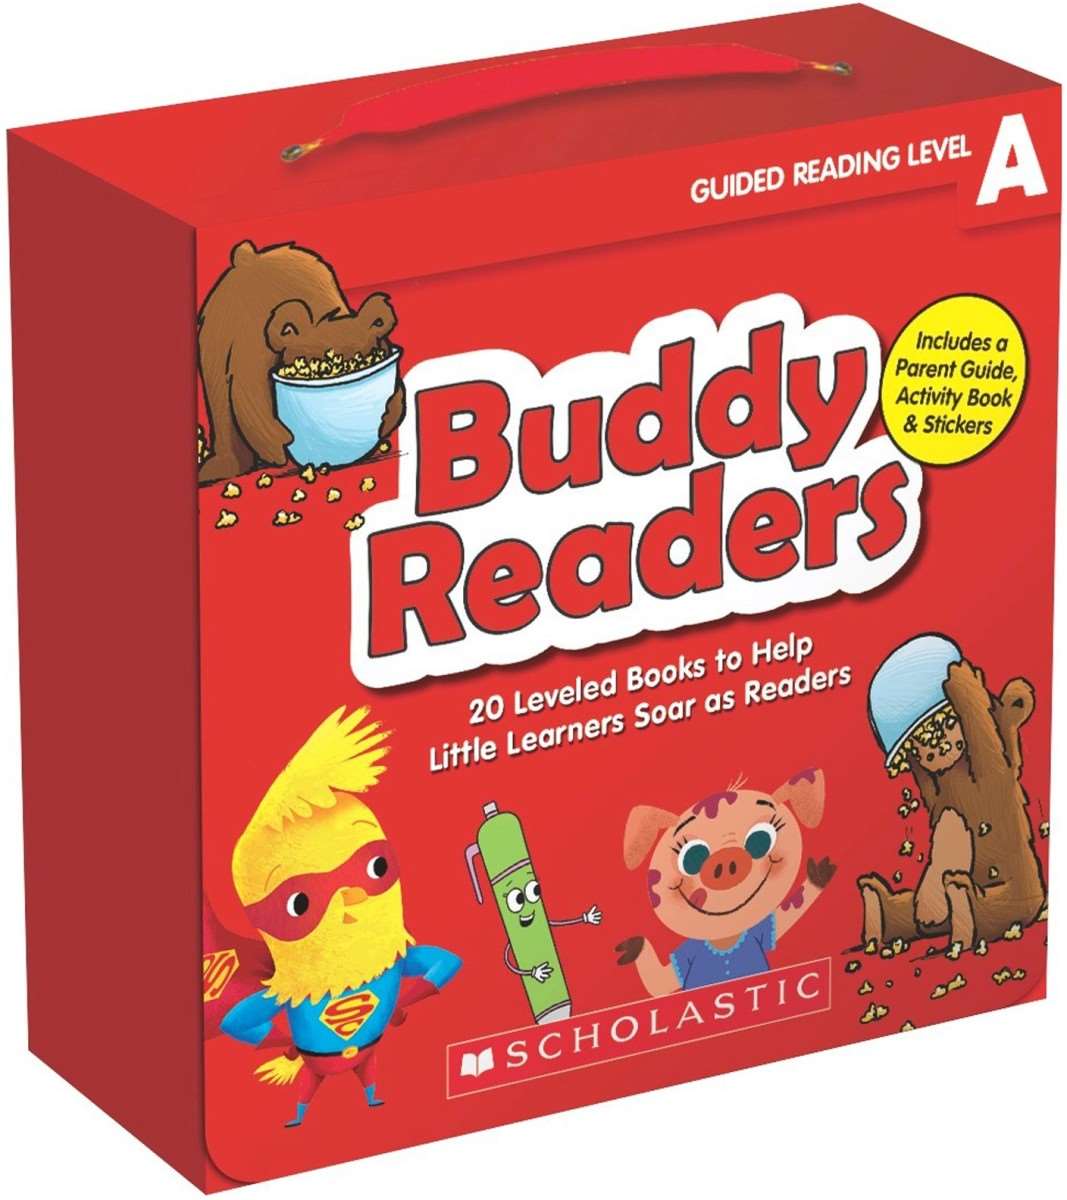 Scholastic игры. Level books. Бадди английский для детей Космо ящики. Reading buddies. Бади на английском